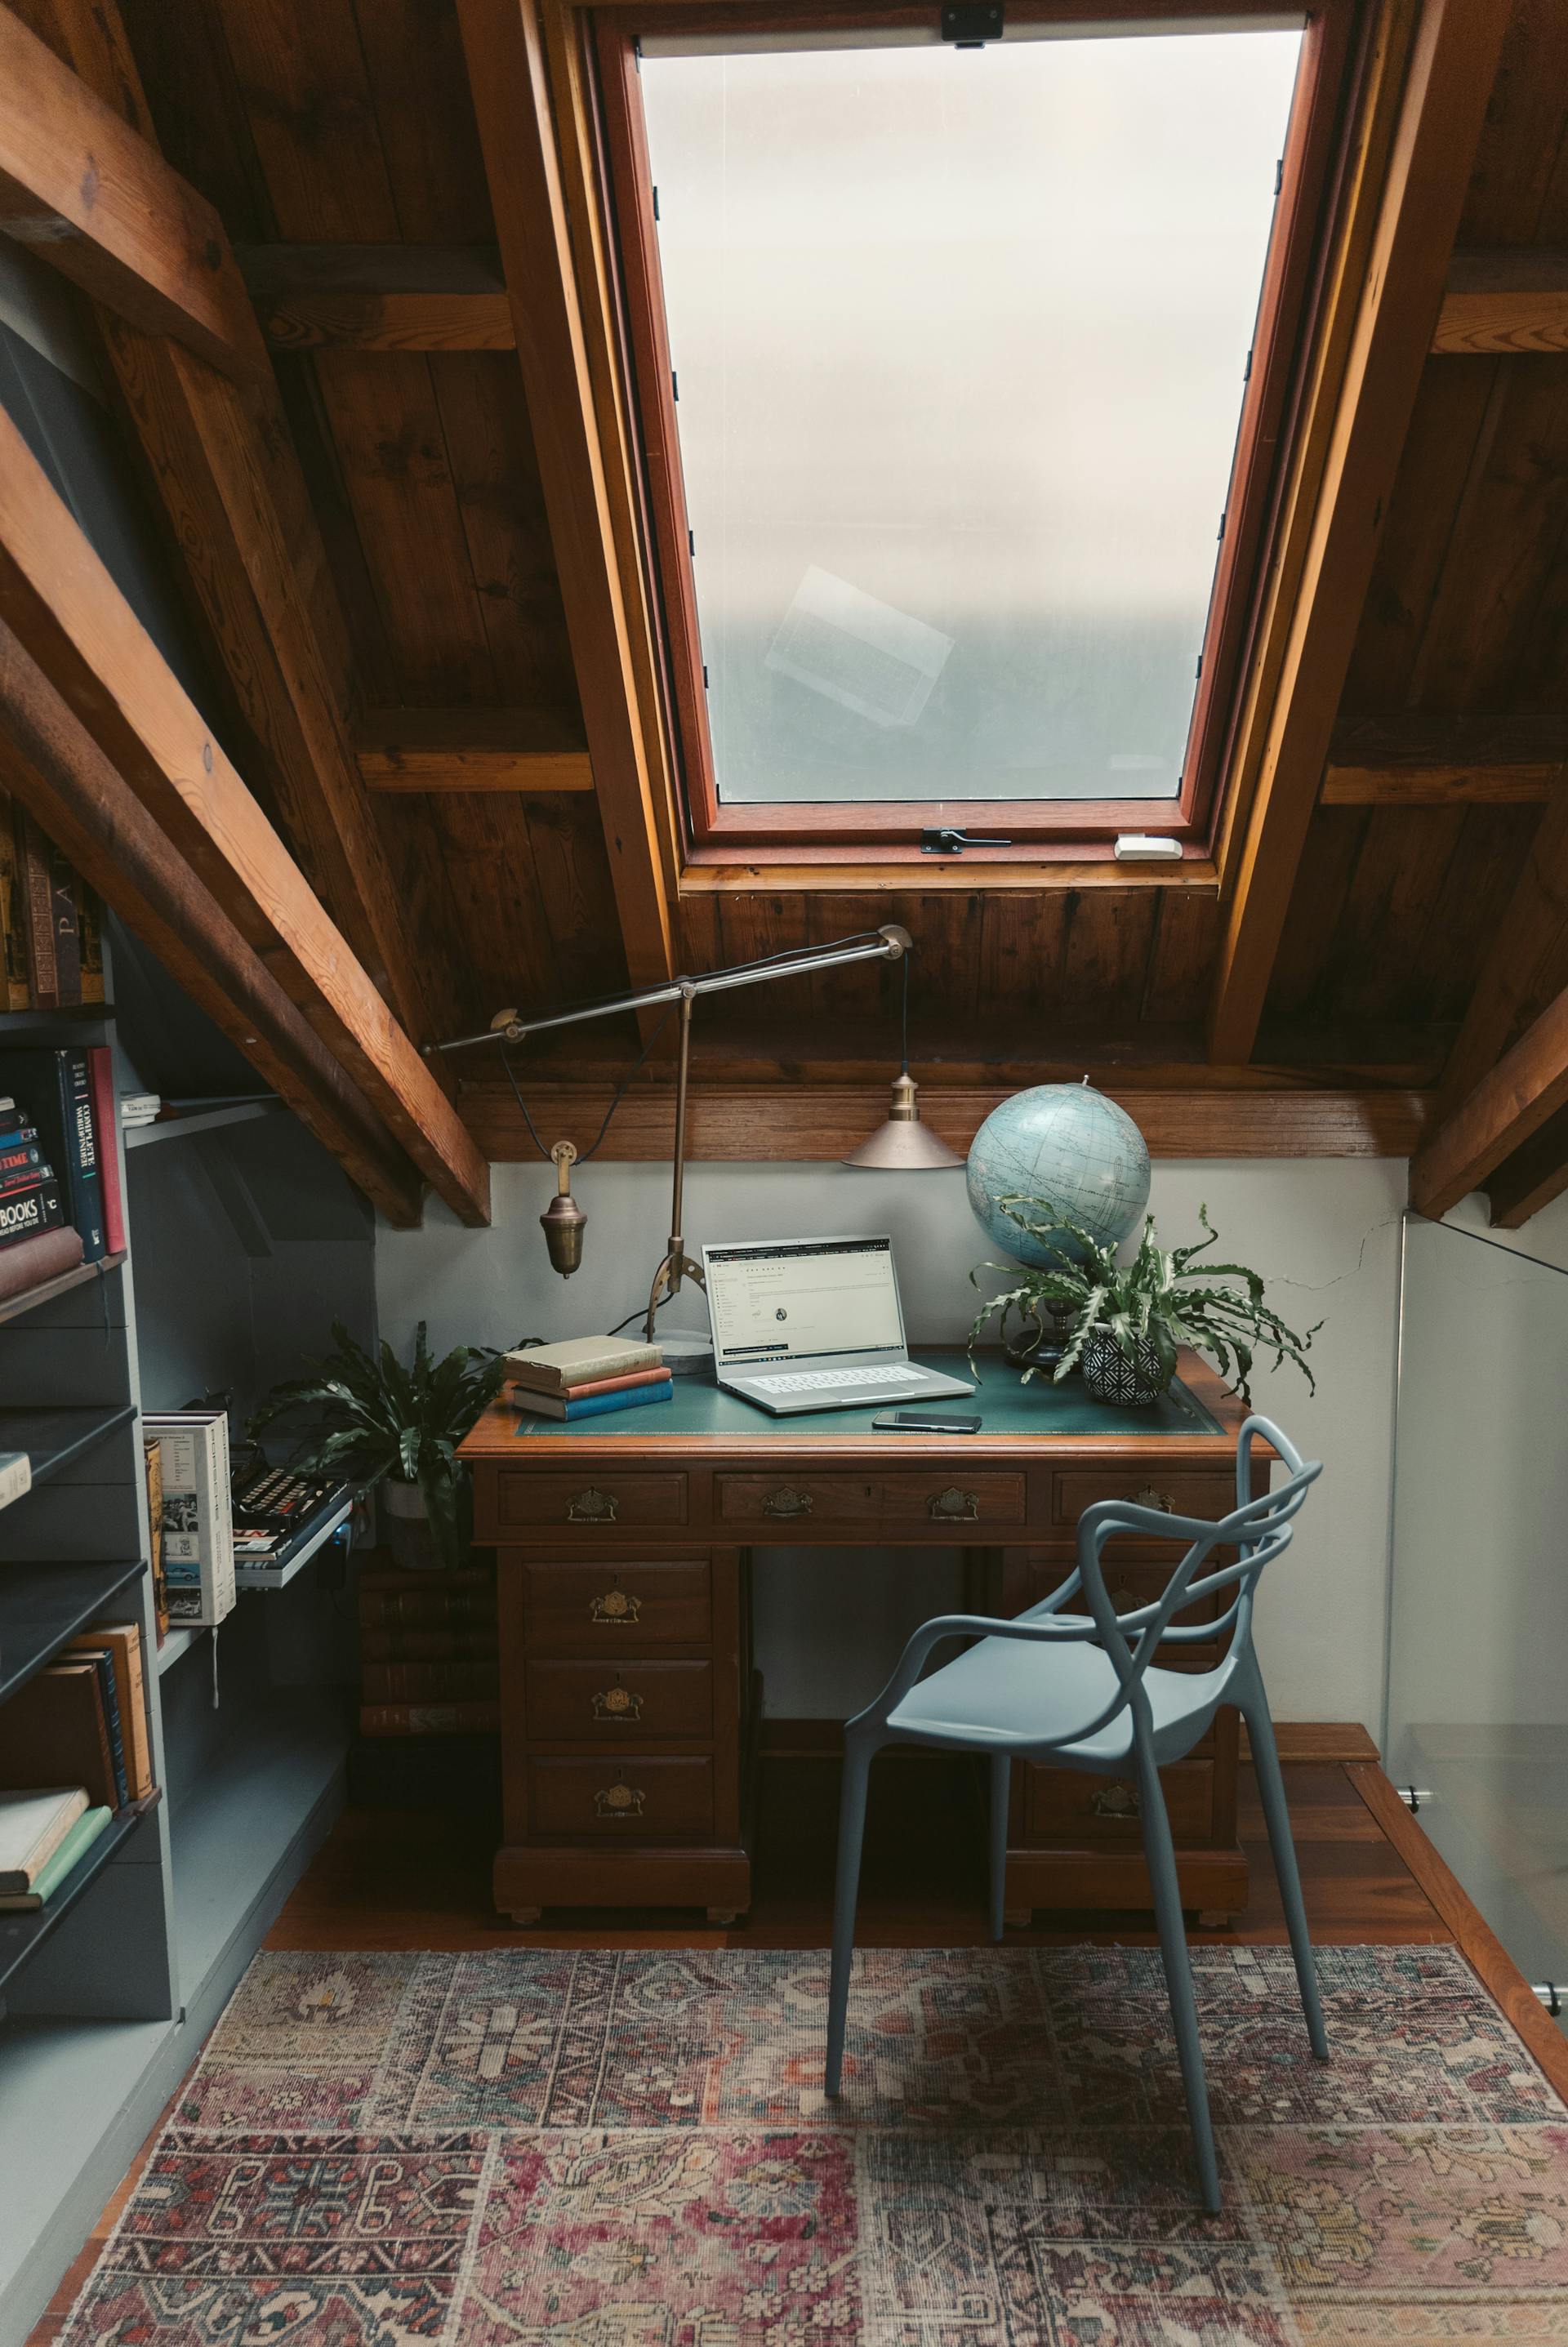 A study room | Source: Pexels